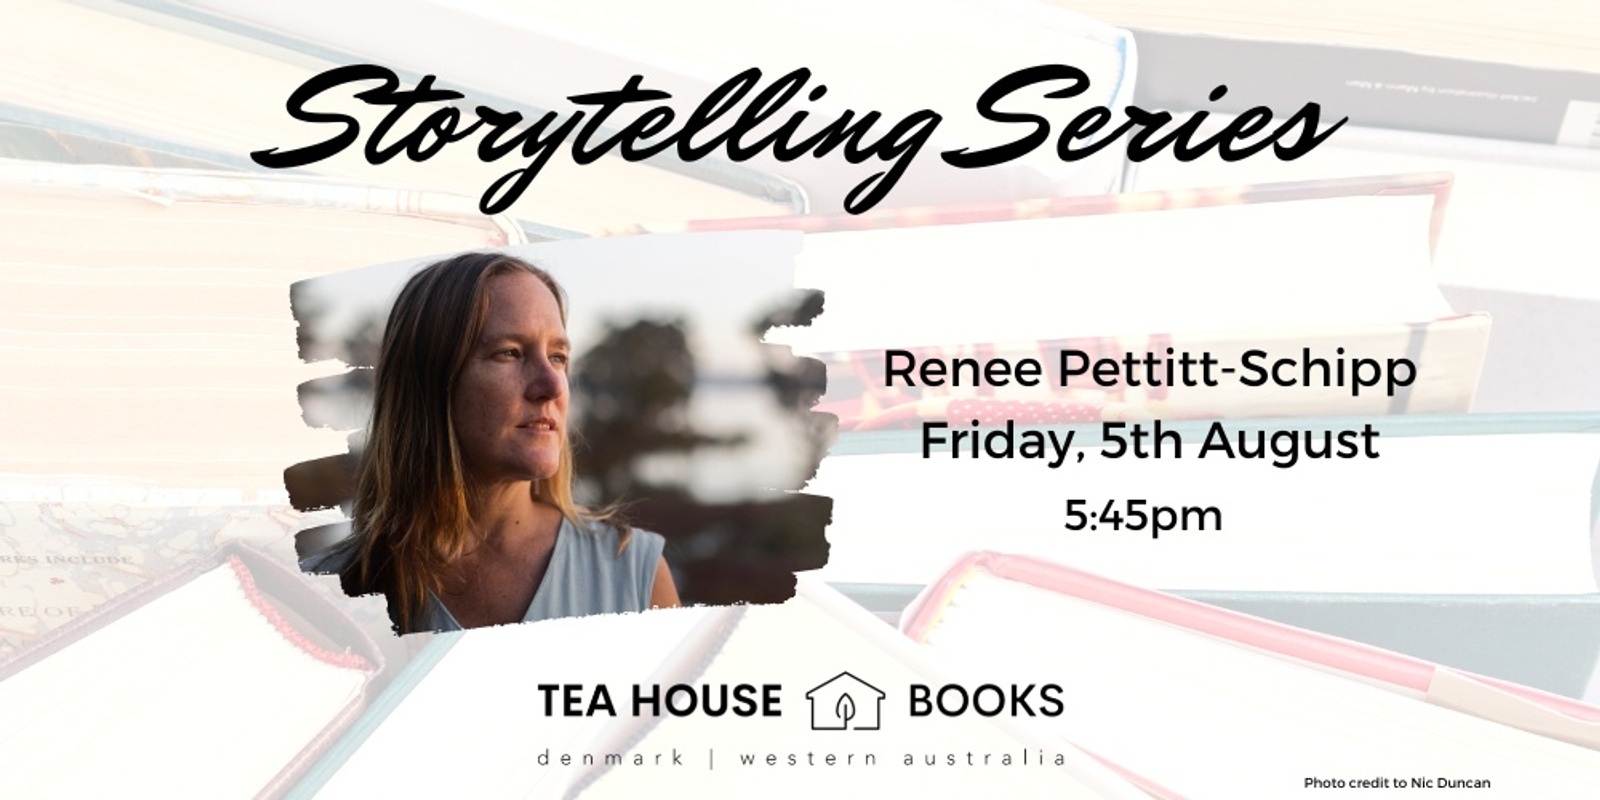 Banner image for Storytelling Session with Renee Pettitt-Schipp